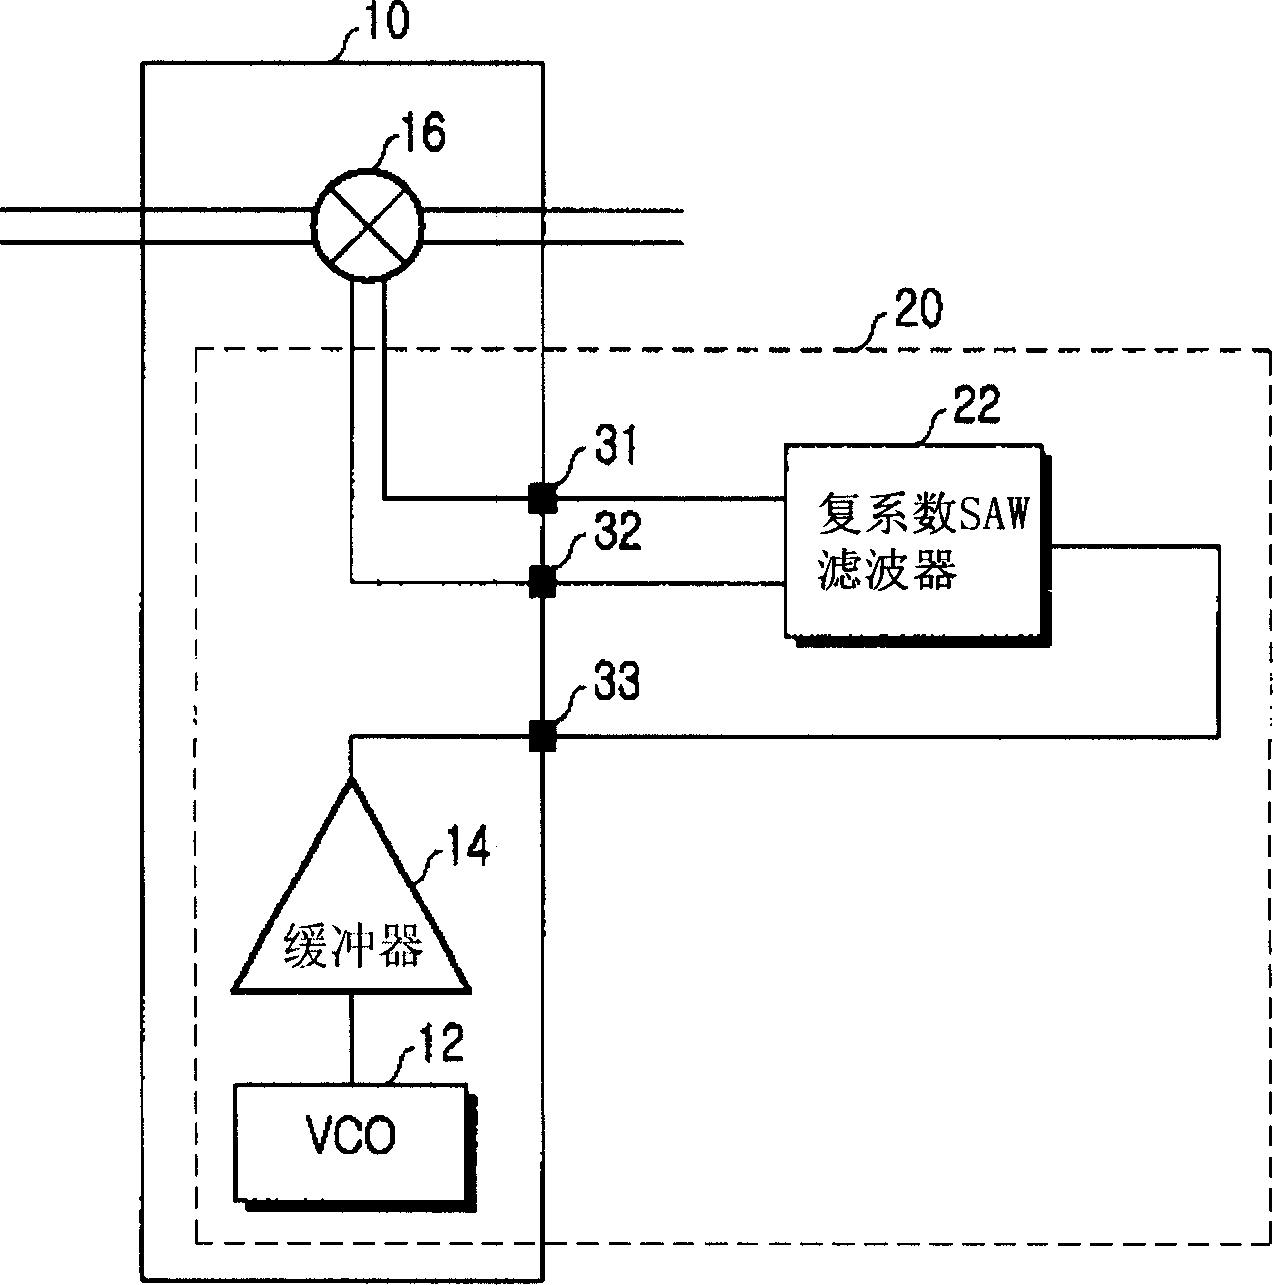 Quadrature phase oscillator using complex coefficient filter